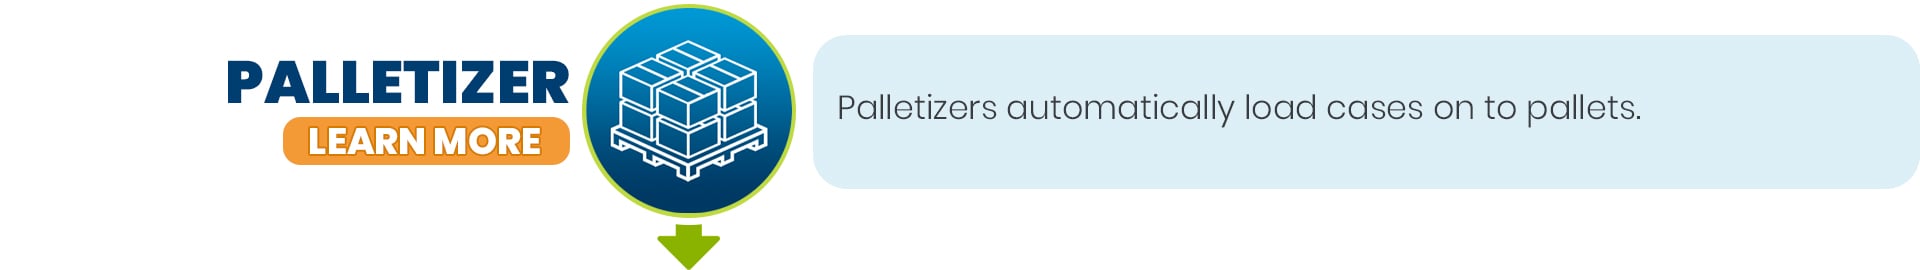 Palletizer - Block